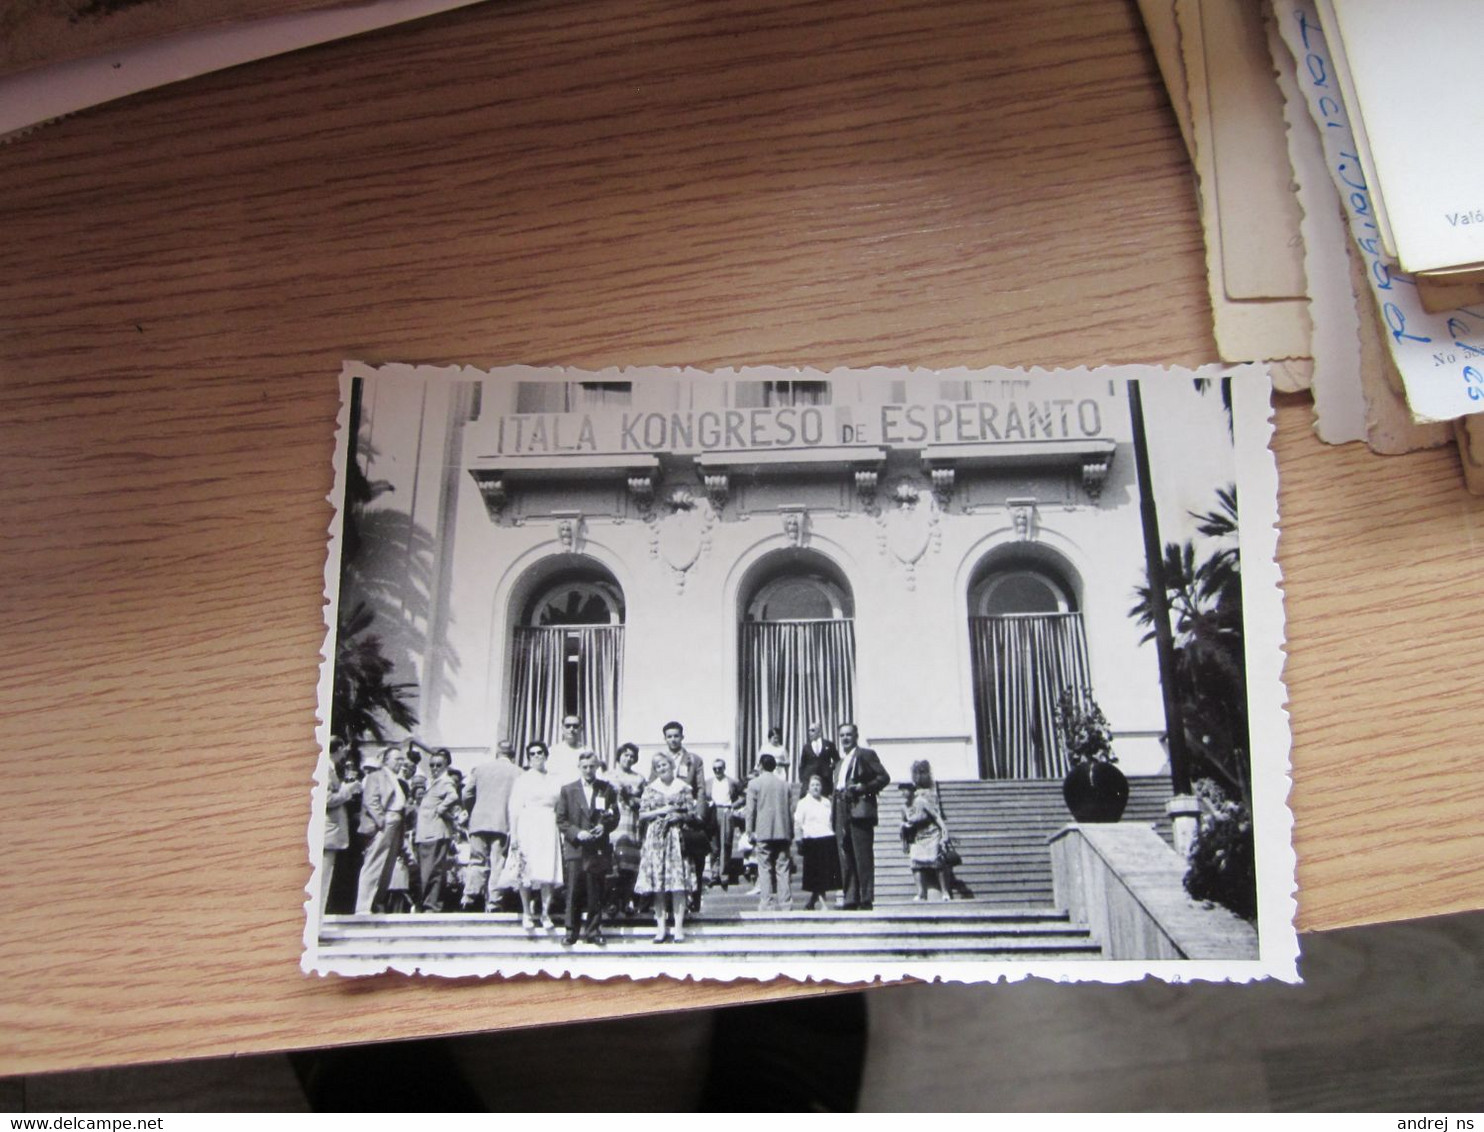 Italia Kongreso De Esperanto Old Photo Postcards - Esperanto